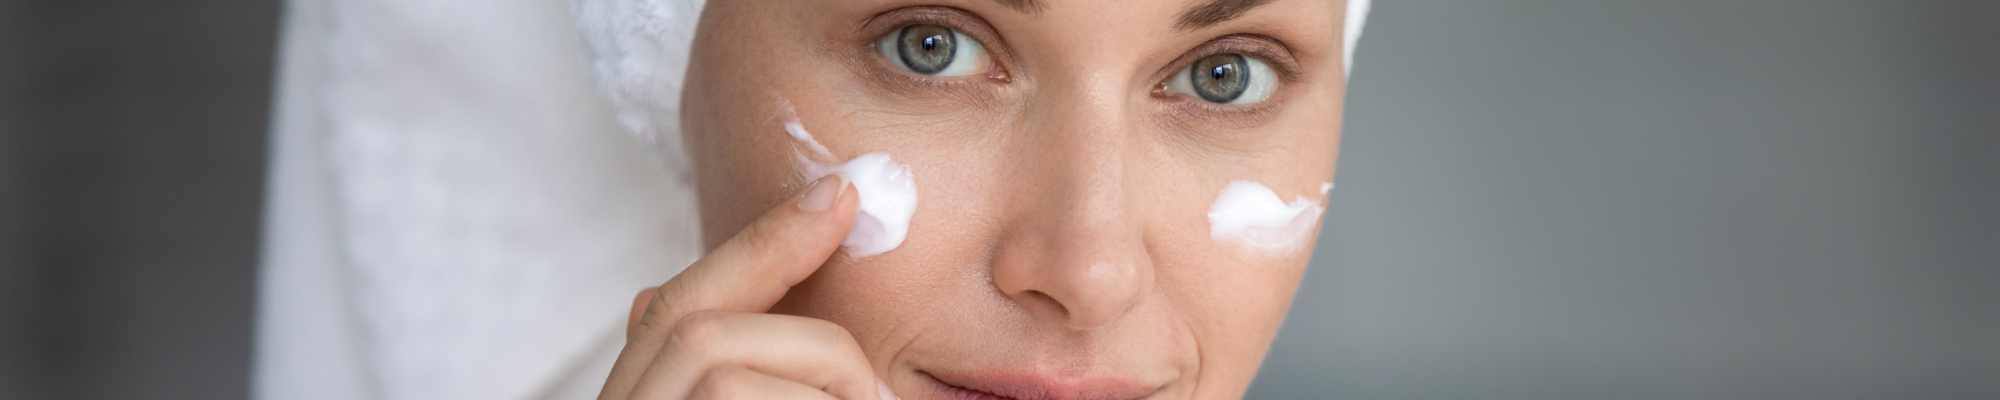 Face Brightening Cream - 14 Amazing Benefits